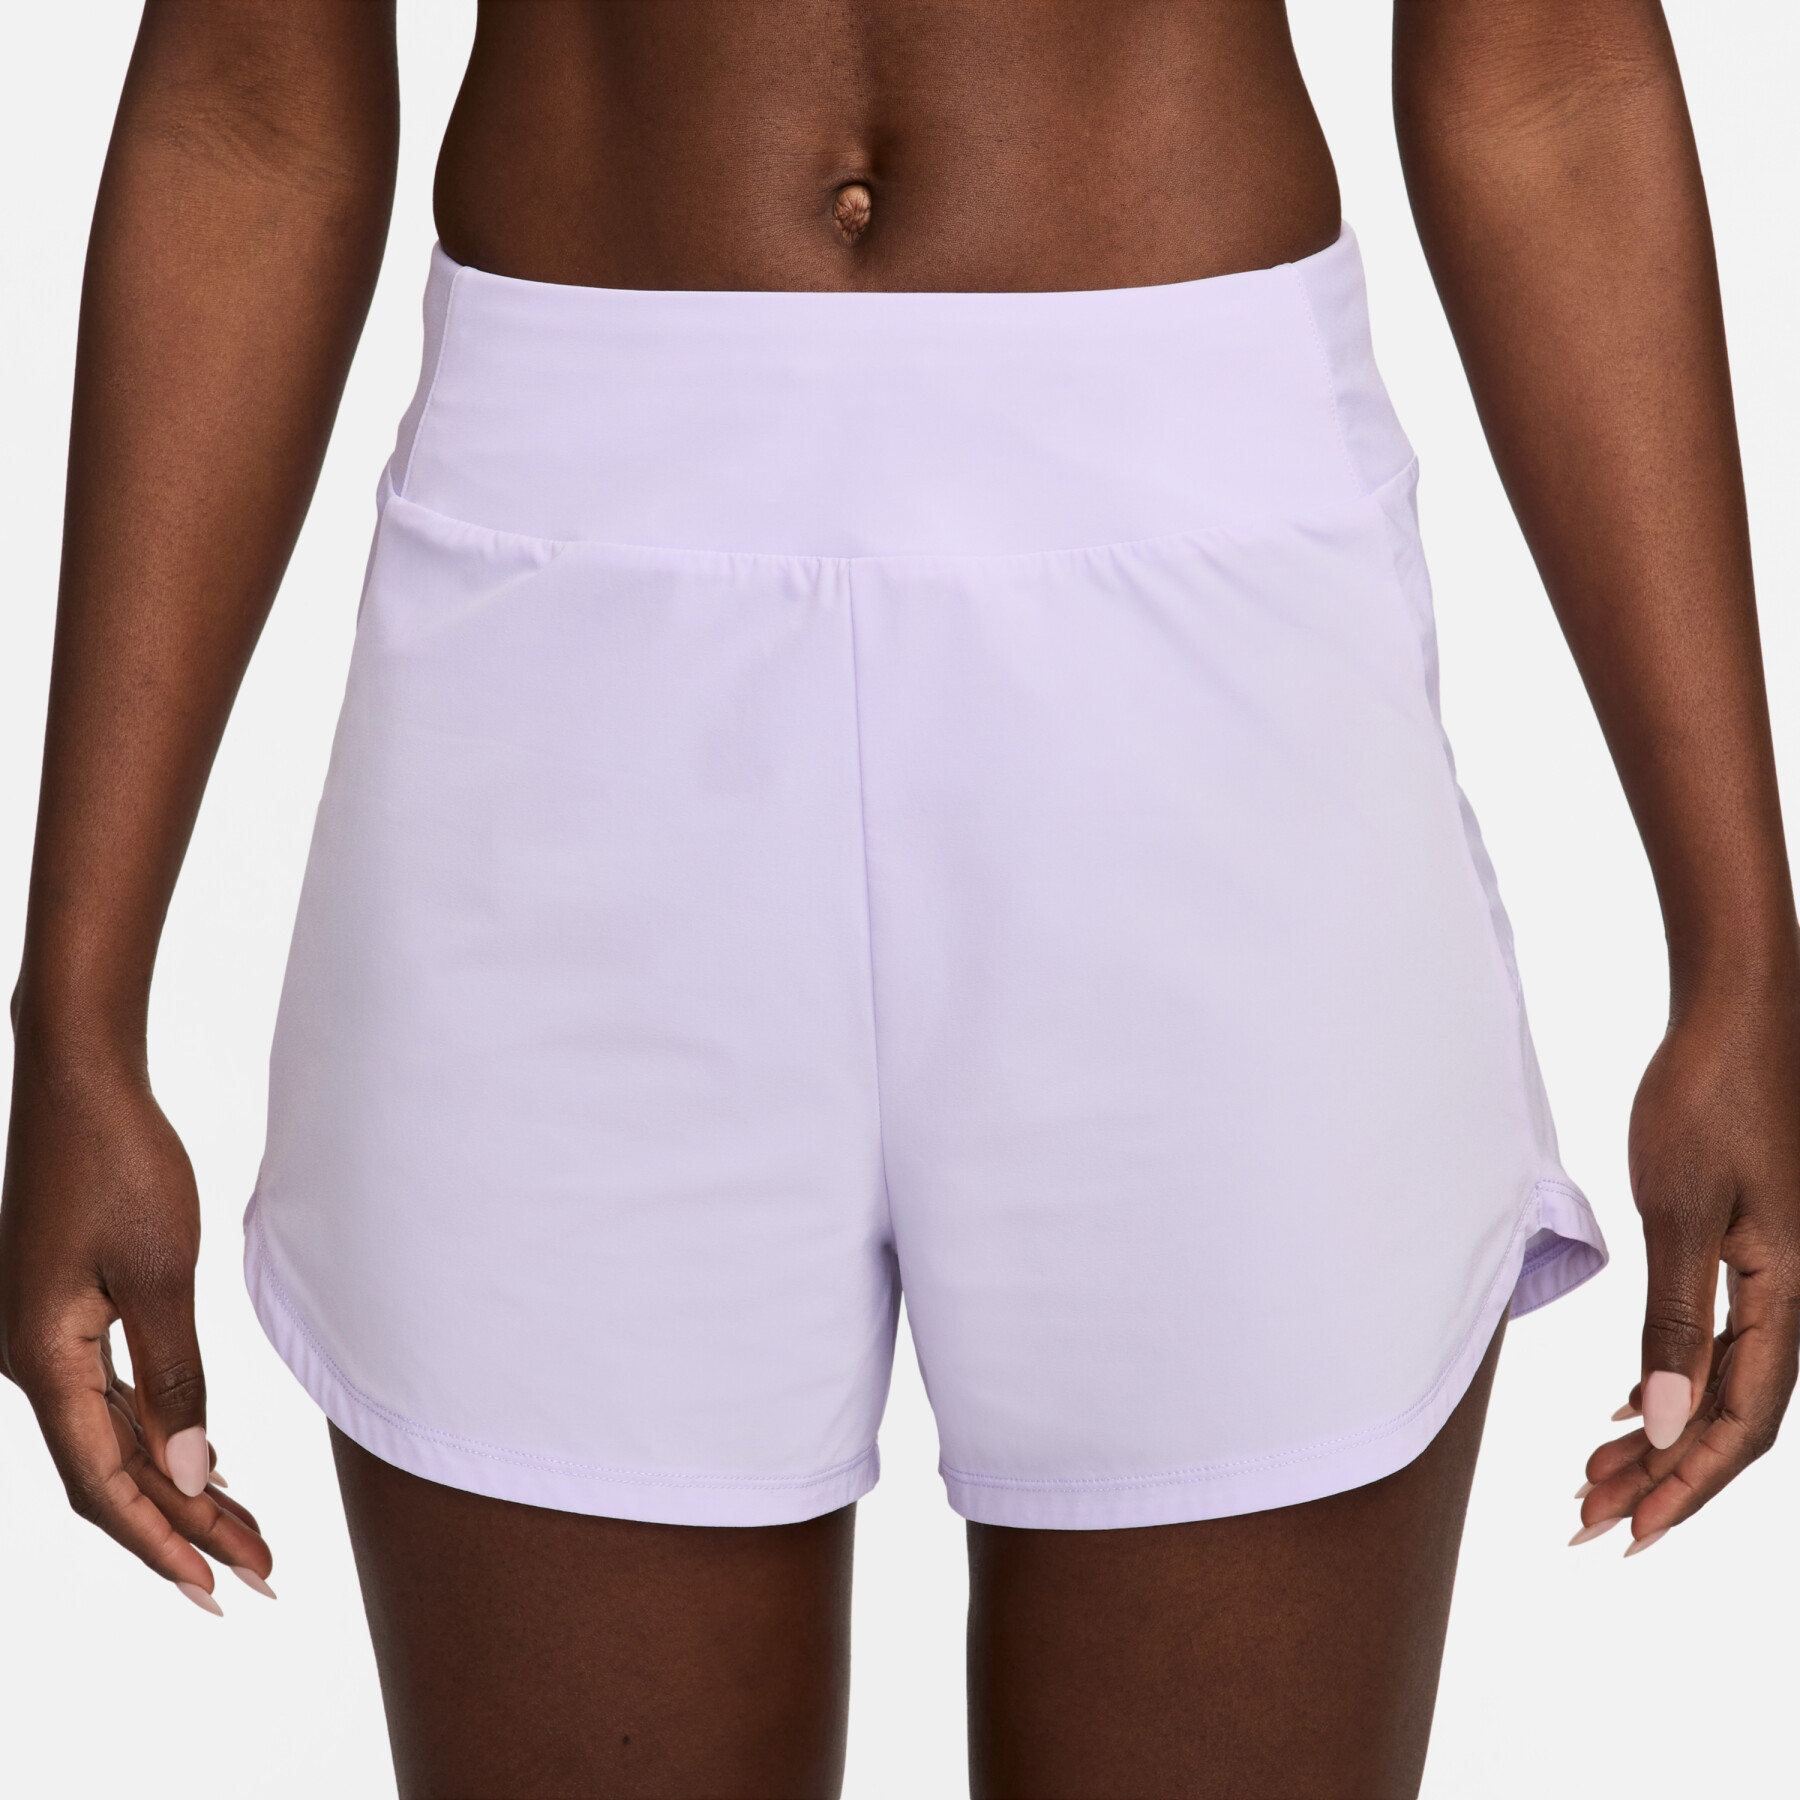 Calções de cintura média para mulher com calção interior integrado Nike Bliss Dri-FIT